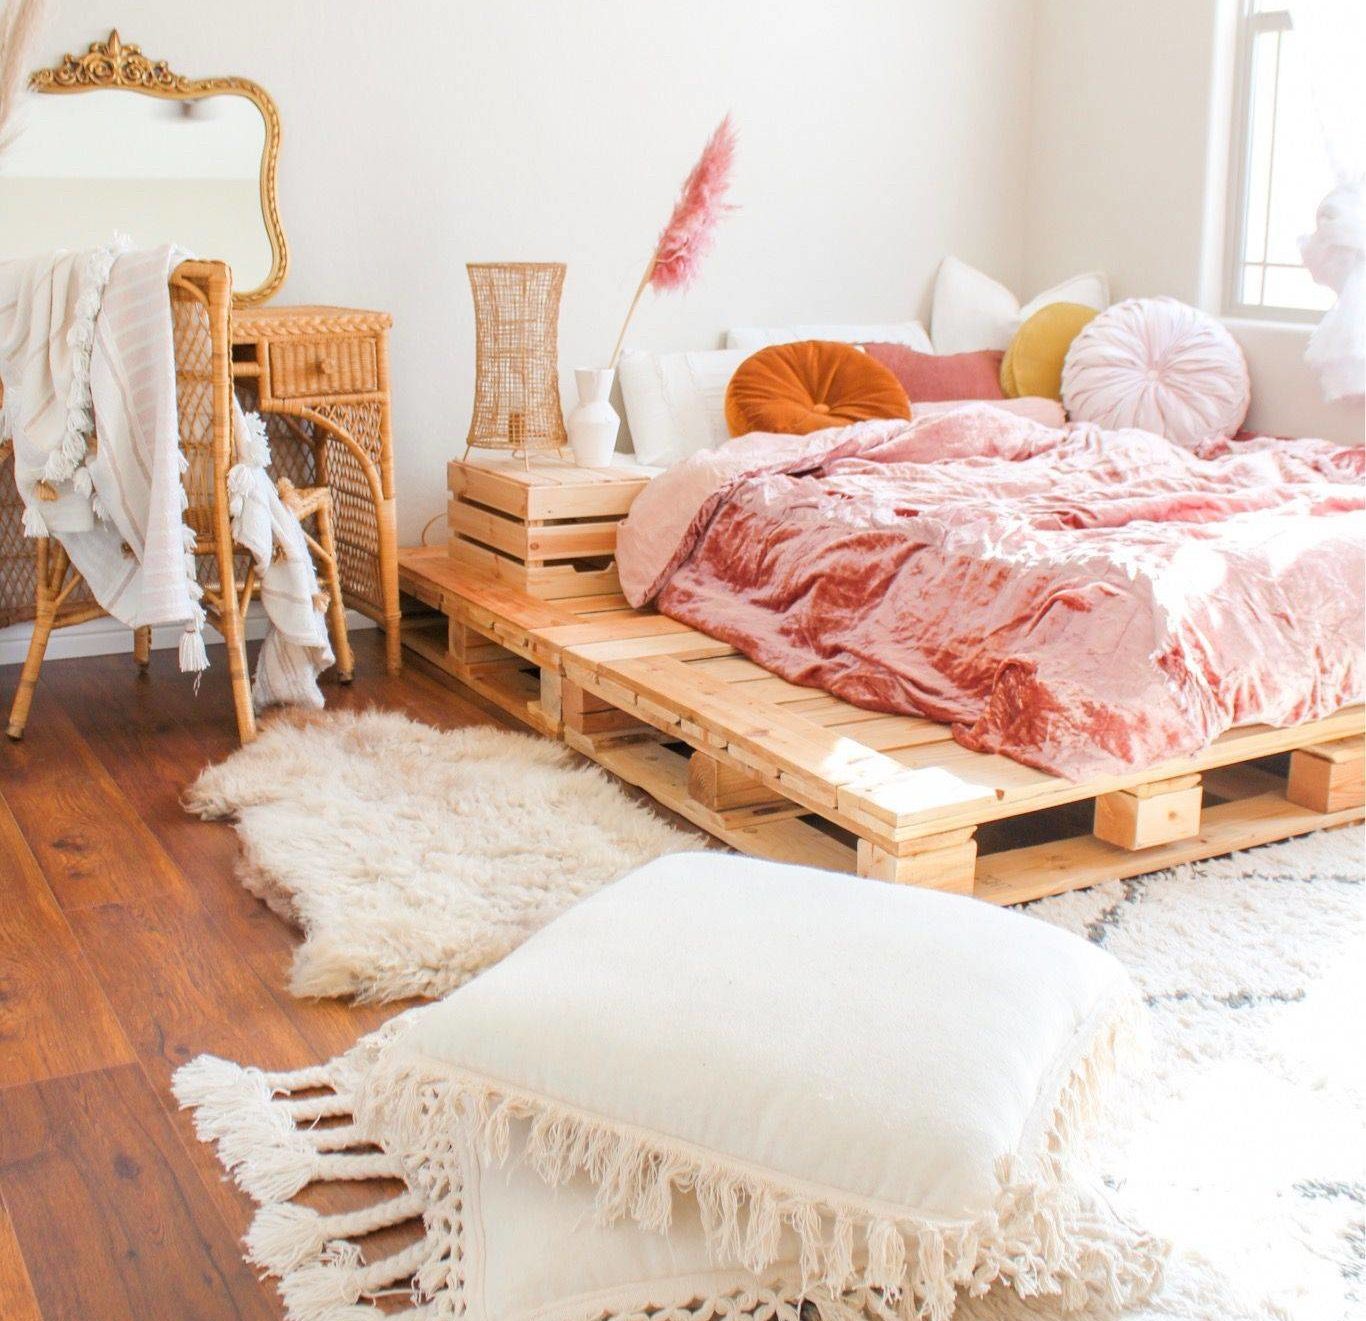 Bộ đồ giường bằng nhung nghiền màu hồng, tấm thảm lông giả và những chiếc gối có tua rua làm cho chiếc giường bằng ván pallet này trở thành một nơi ẩn náu thời thượng